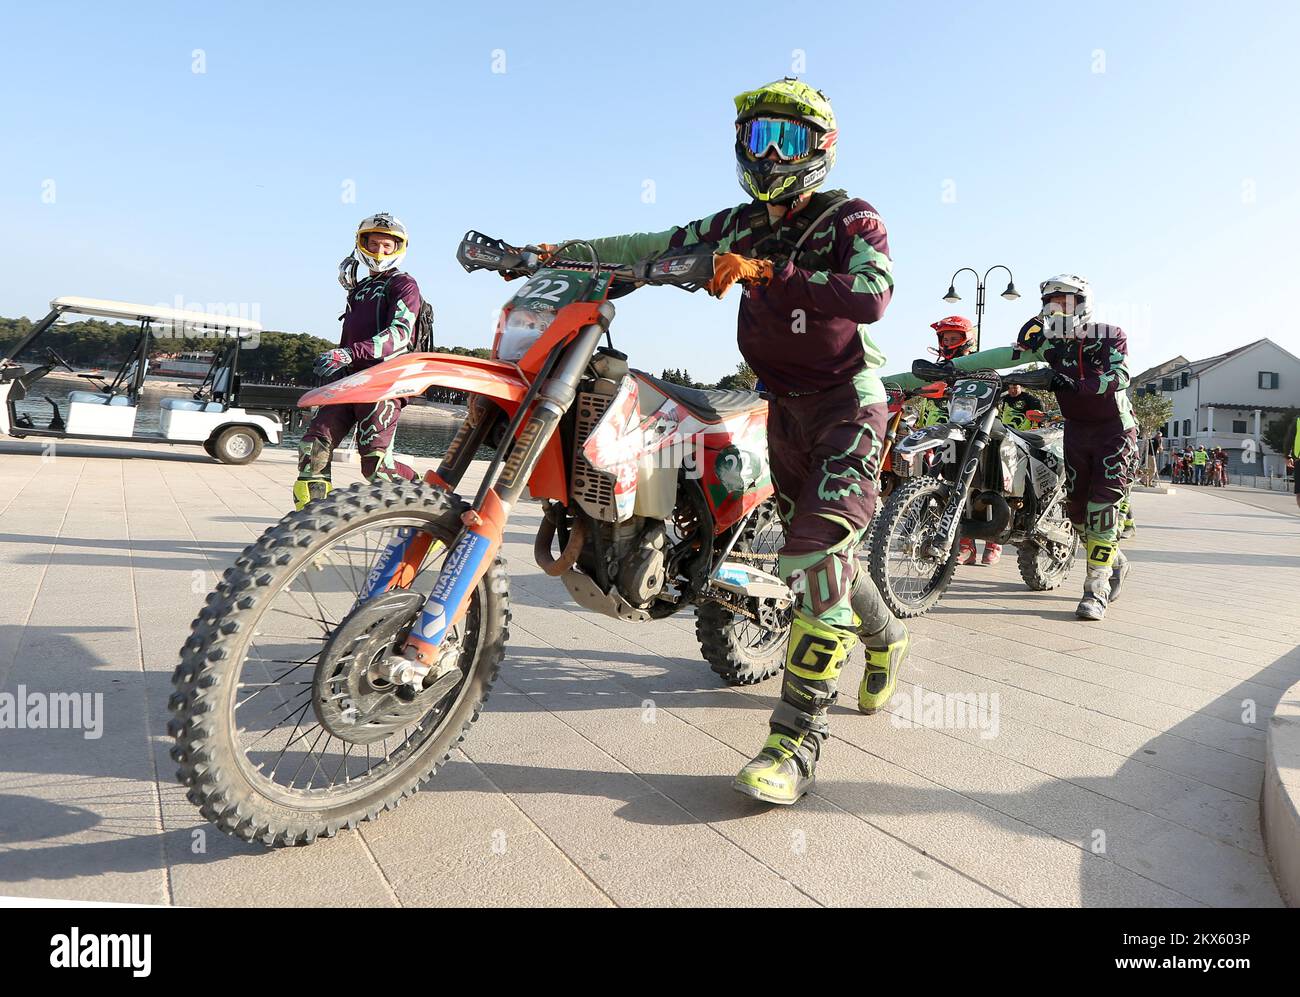 28.04.2018., Croatie, Primosten - le septième événement de moto-touristique  Krka Enduro RAID a attiré plus de 600 concurrents de toute l'Europe photo:  Dusko Jaramaz/PIXSELL Photo Stock - Alamy